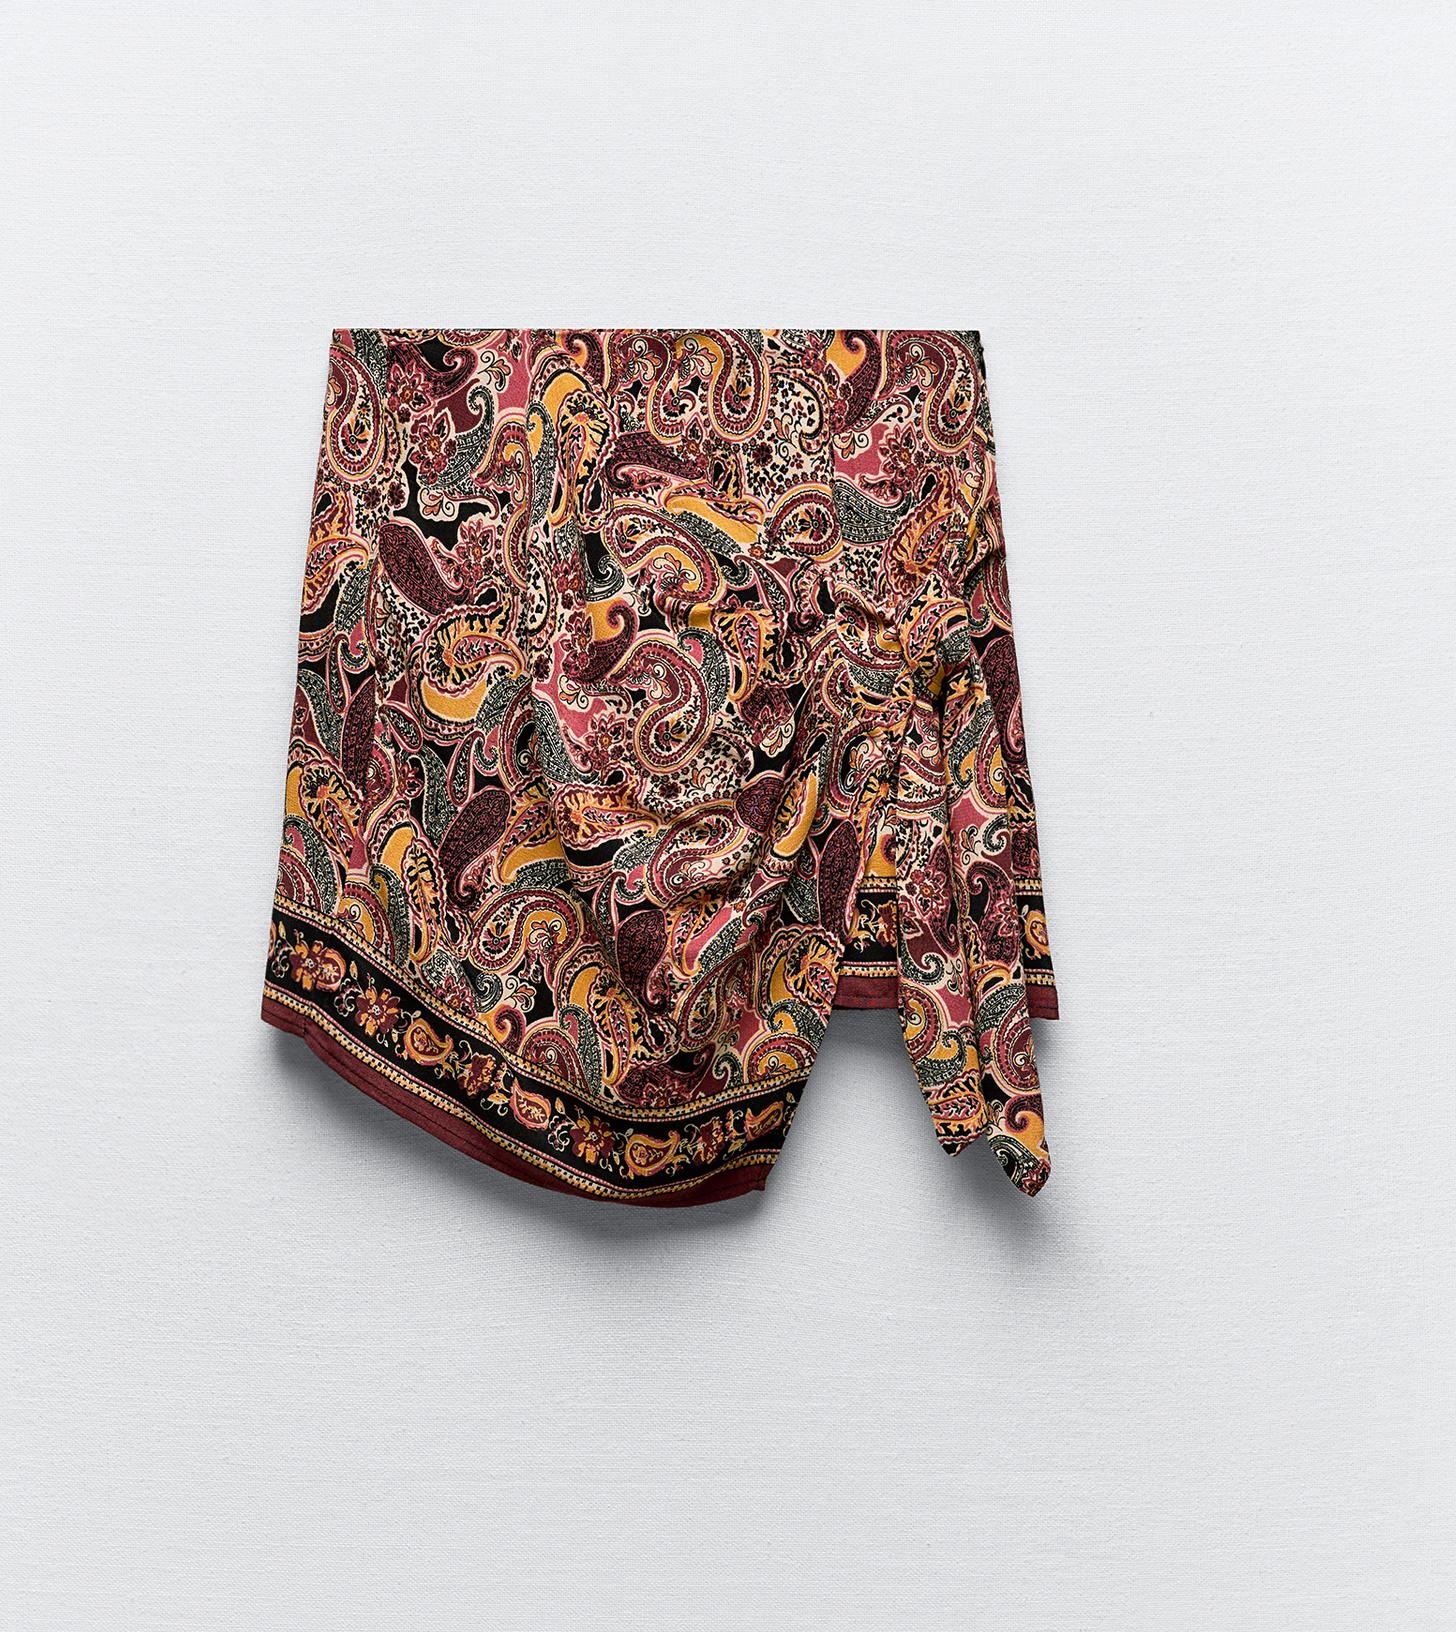 Юбка-шорты Zara Printed With Knot, мультиколор юбка шорты zara houndstooth мультиколор